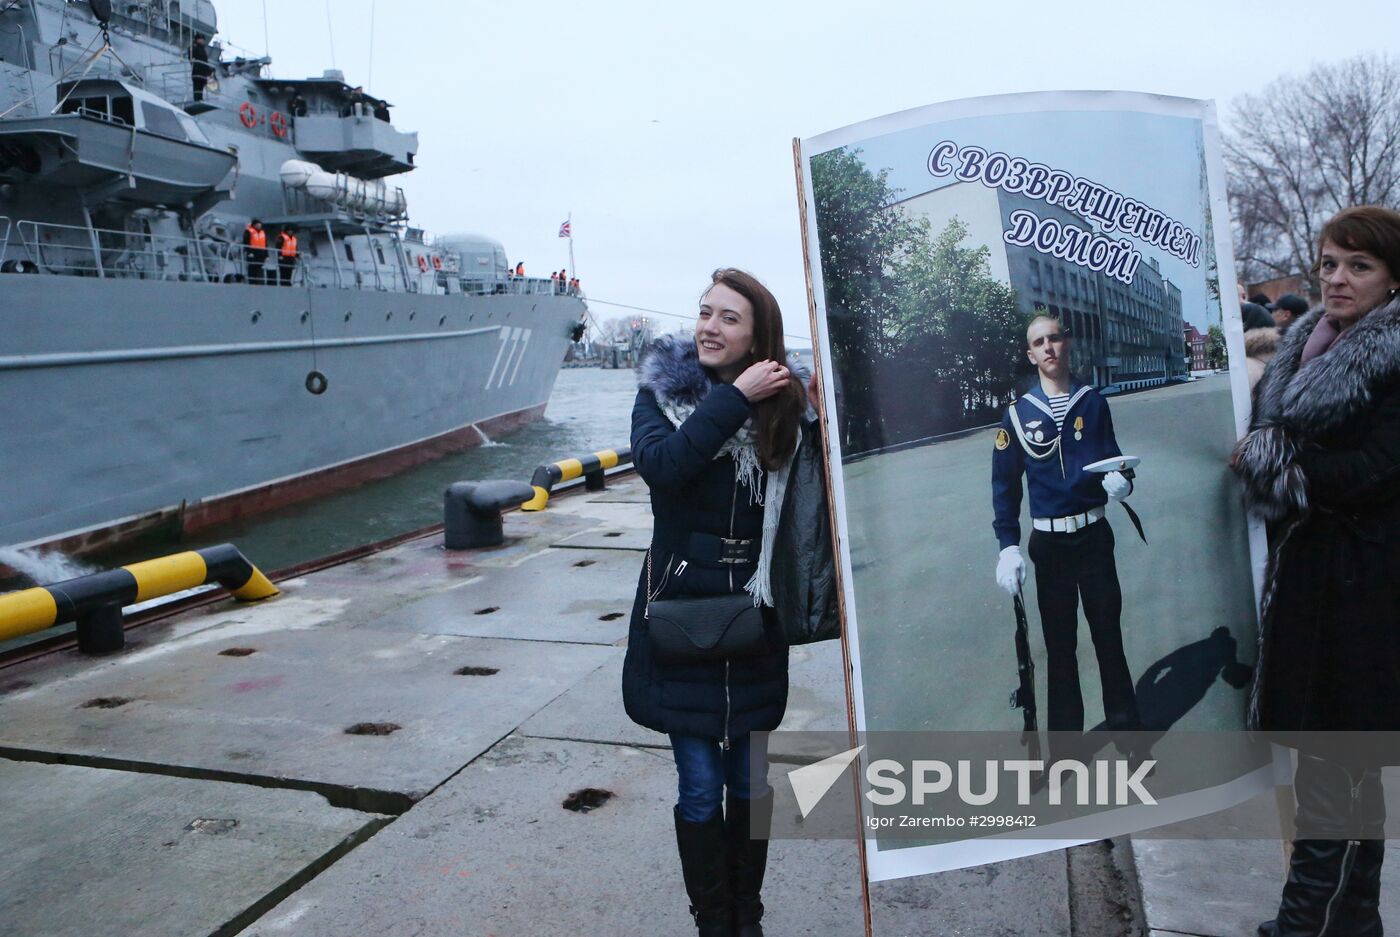 The Yaroslav Mudry destroyer escort vessel welcomed at Baltiysk port